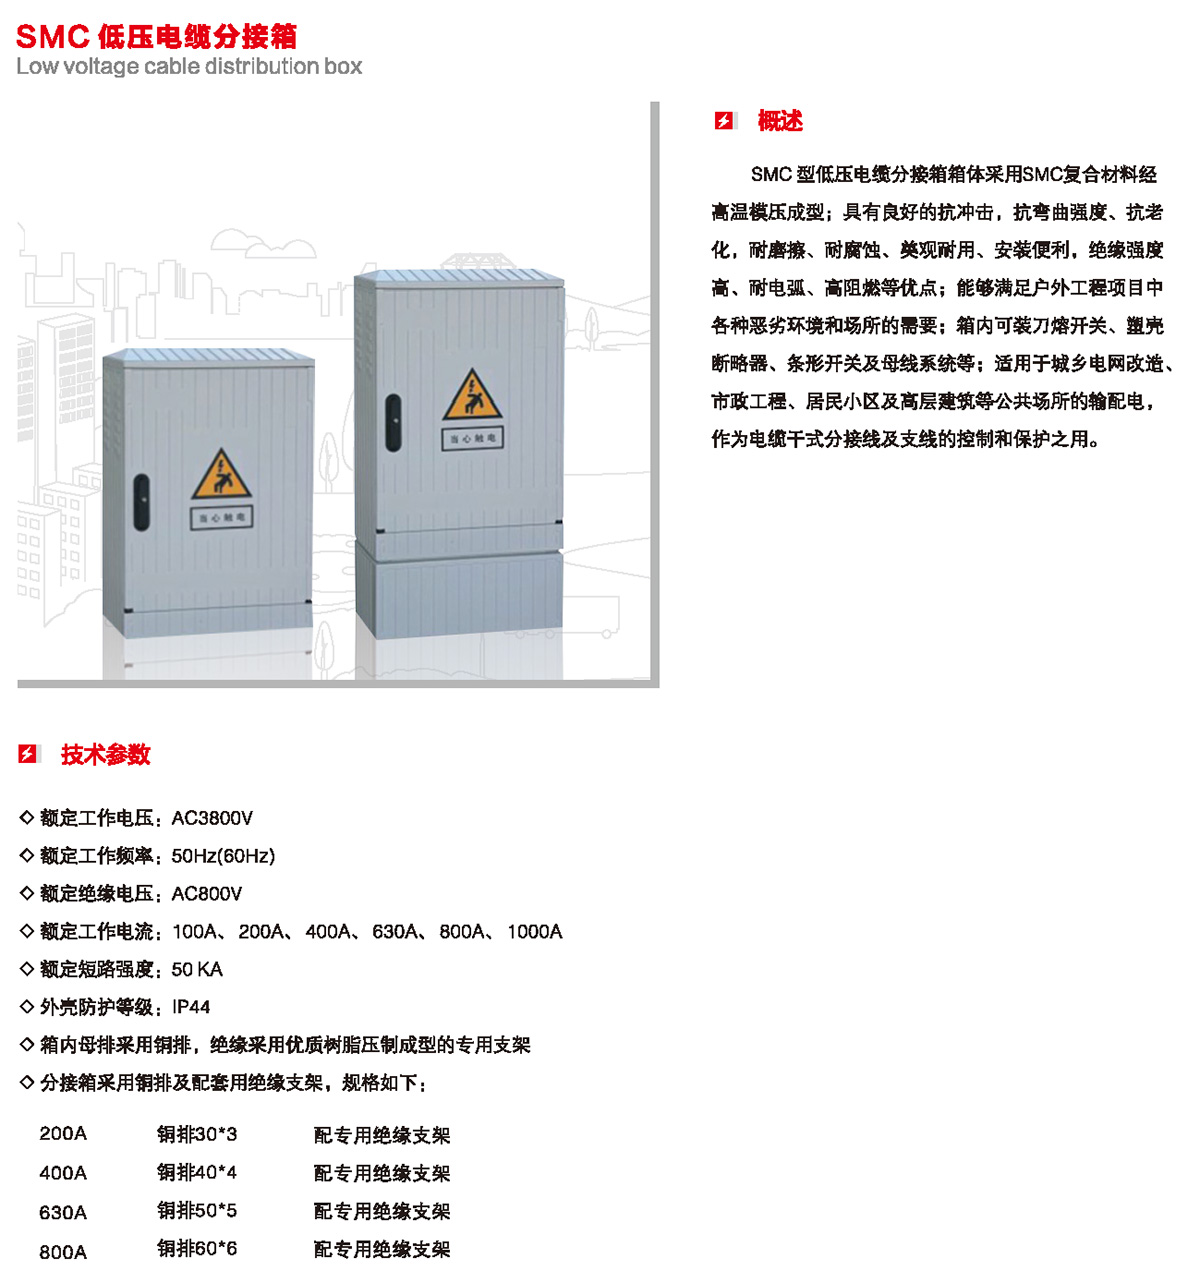 SMC 低压电缆分接箱概述、技术参数